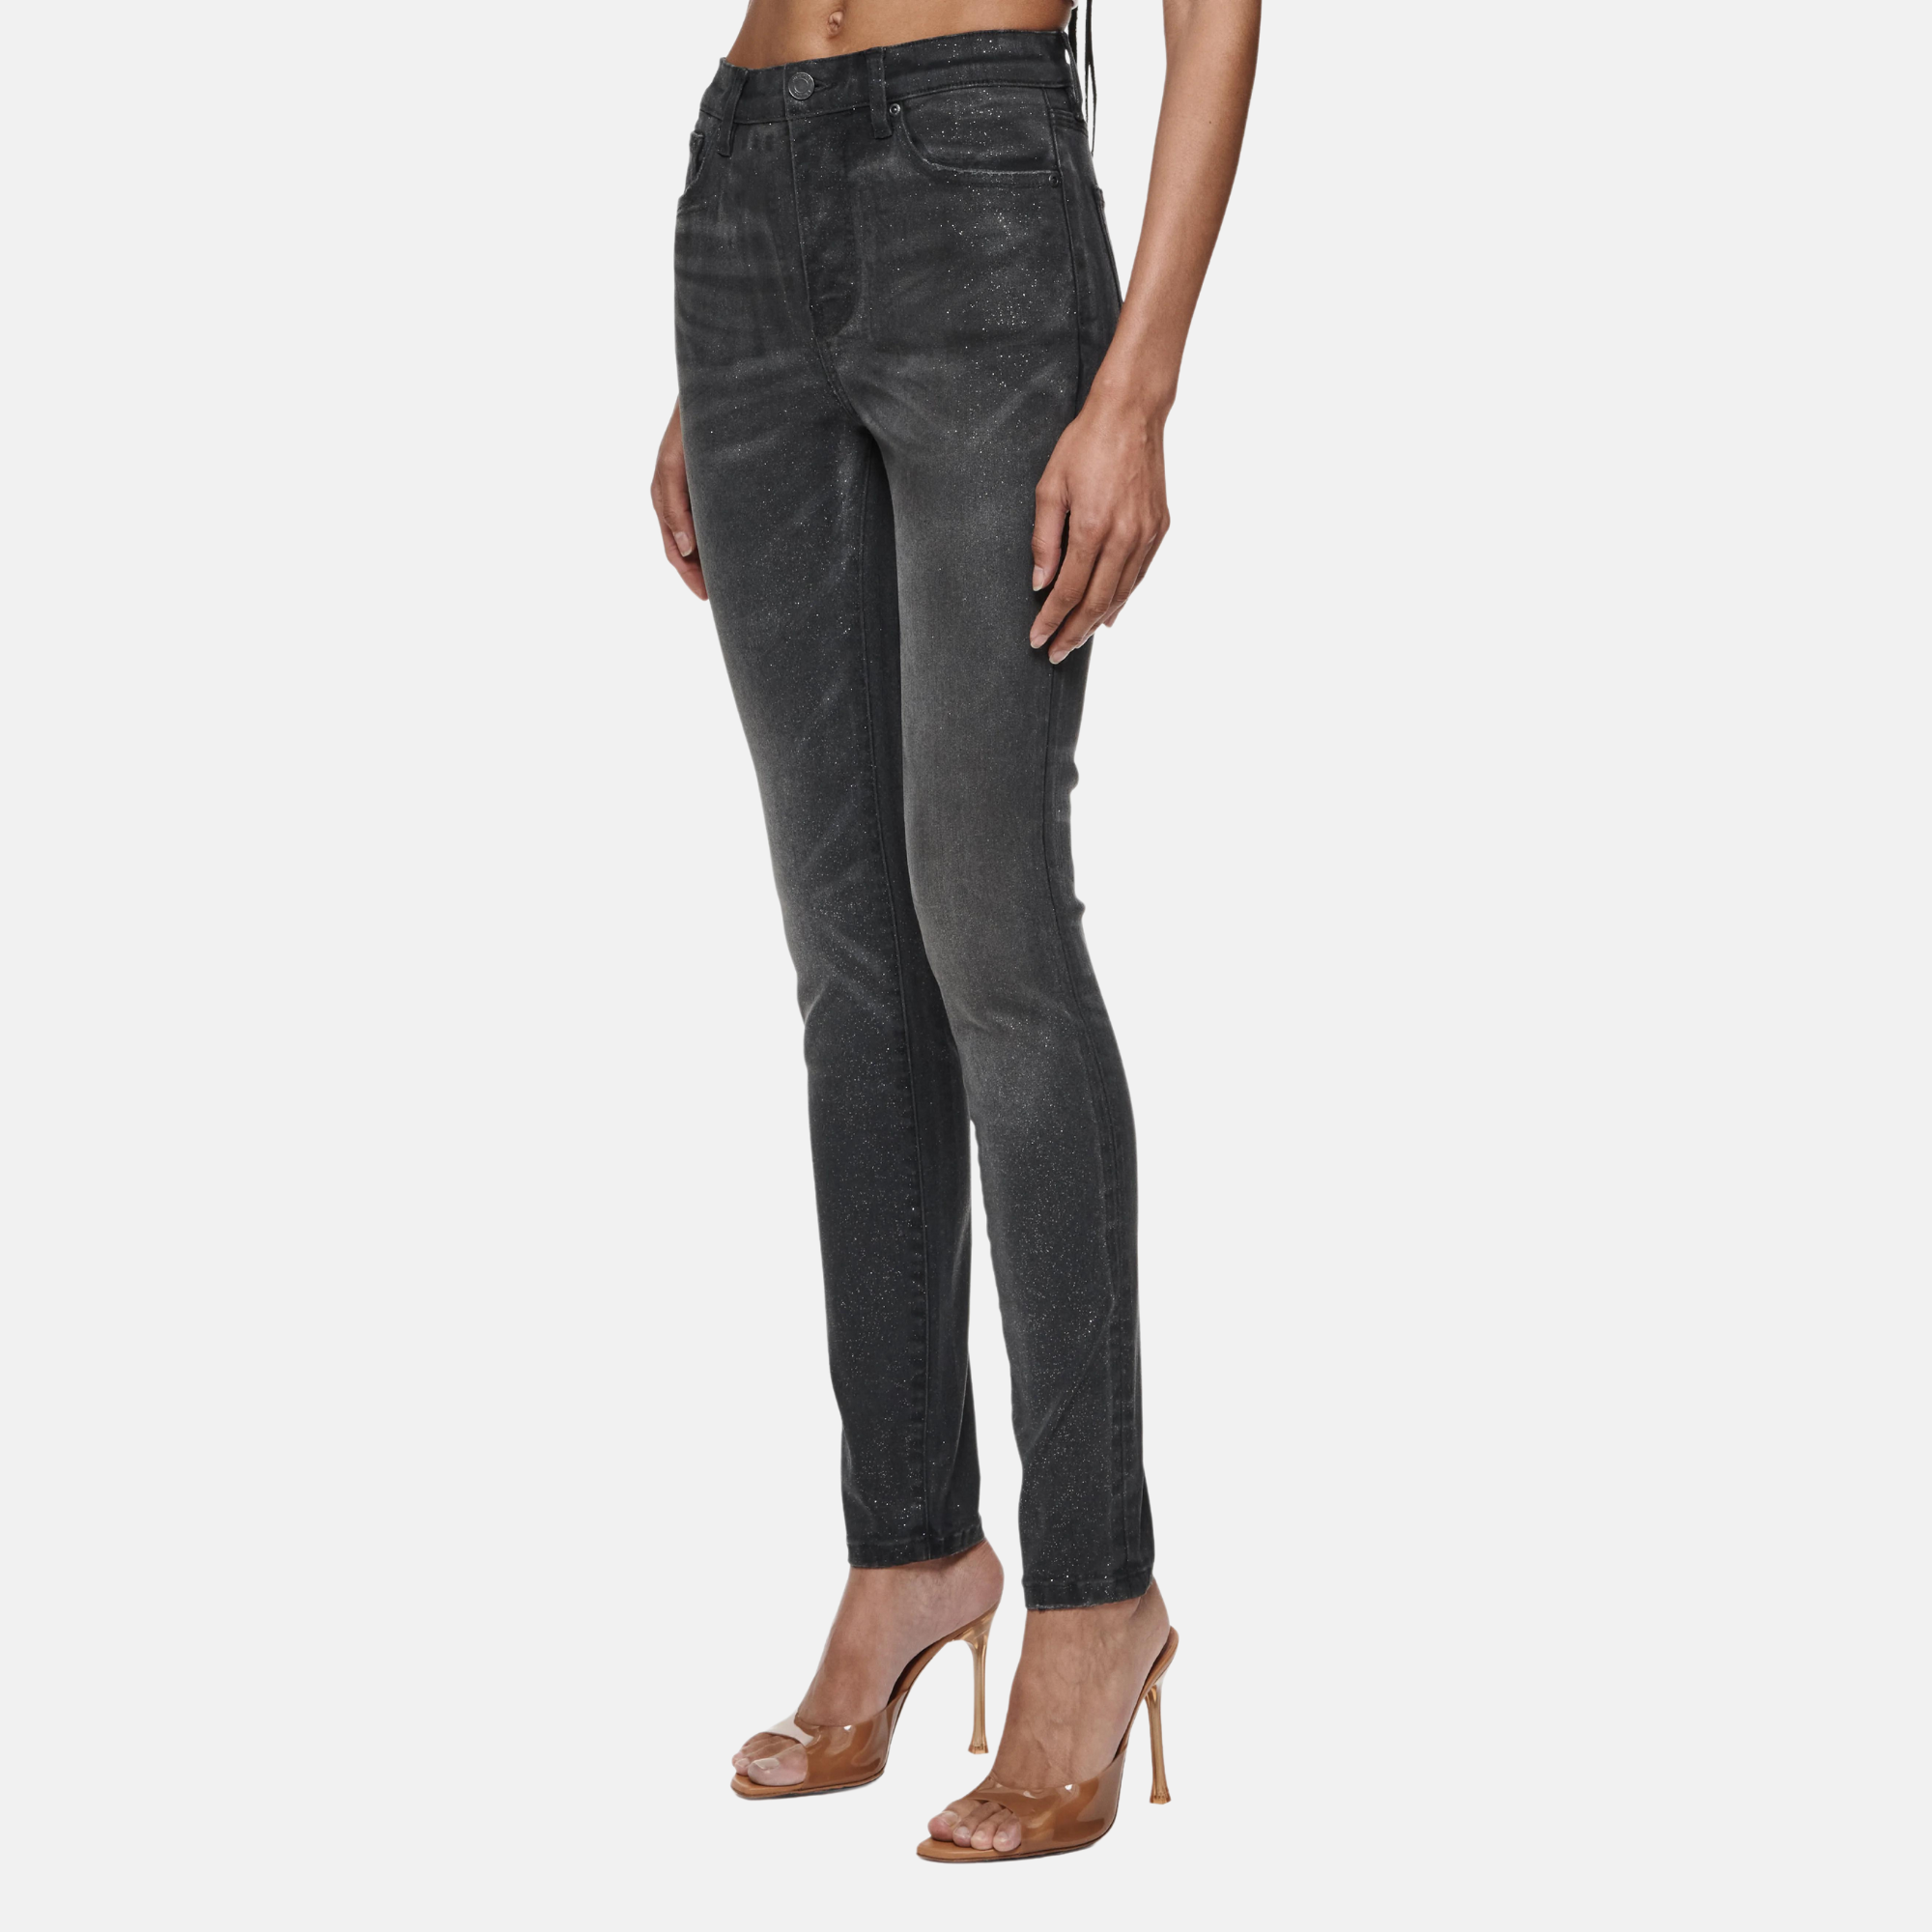 Purple Brand Women's Black Skinny Glitter Jeans